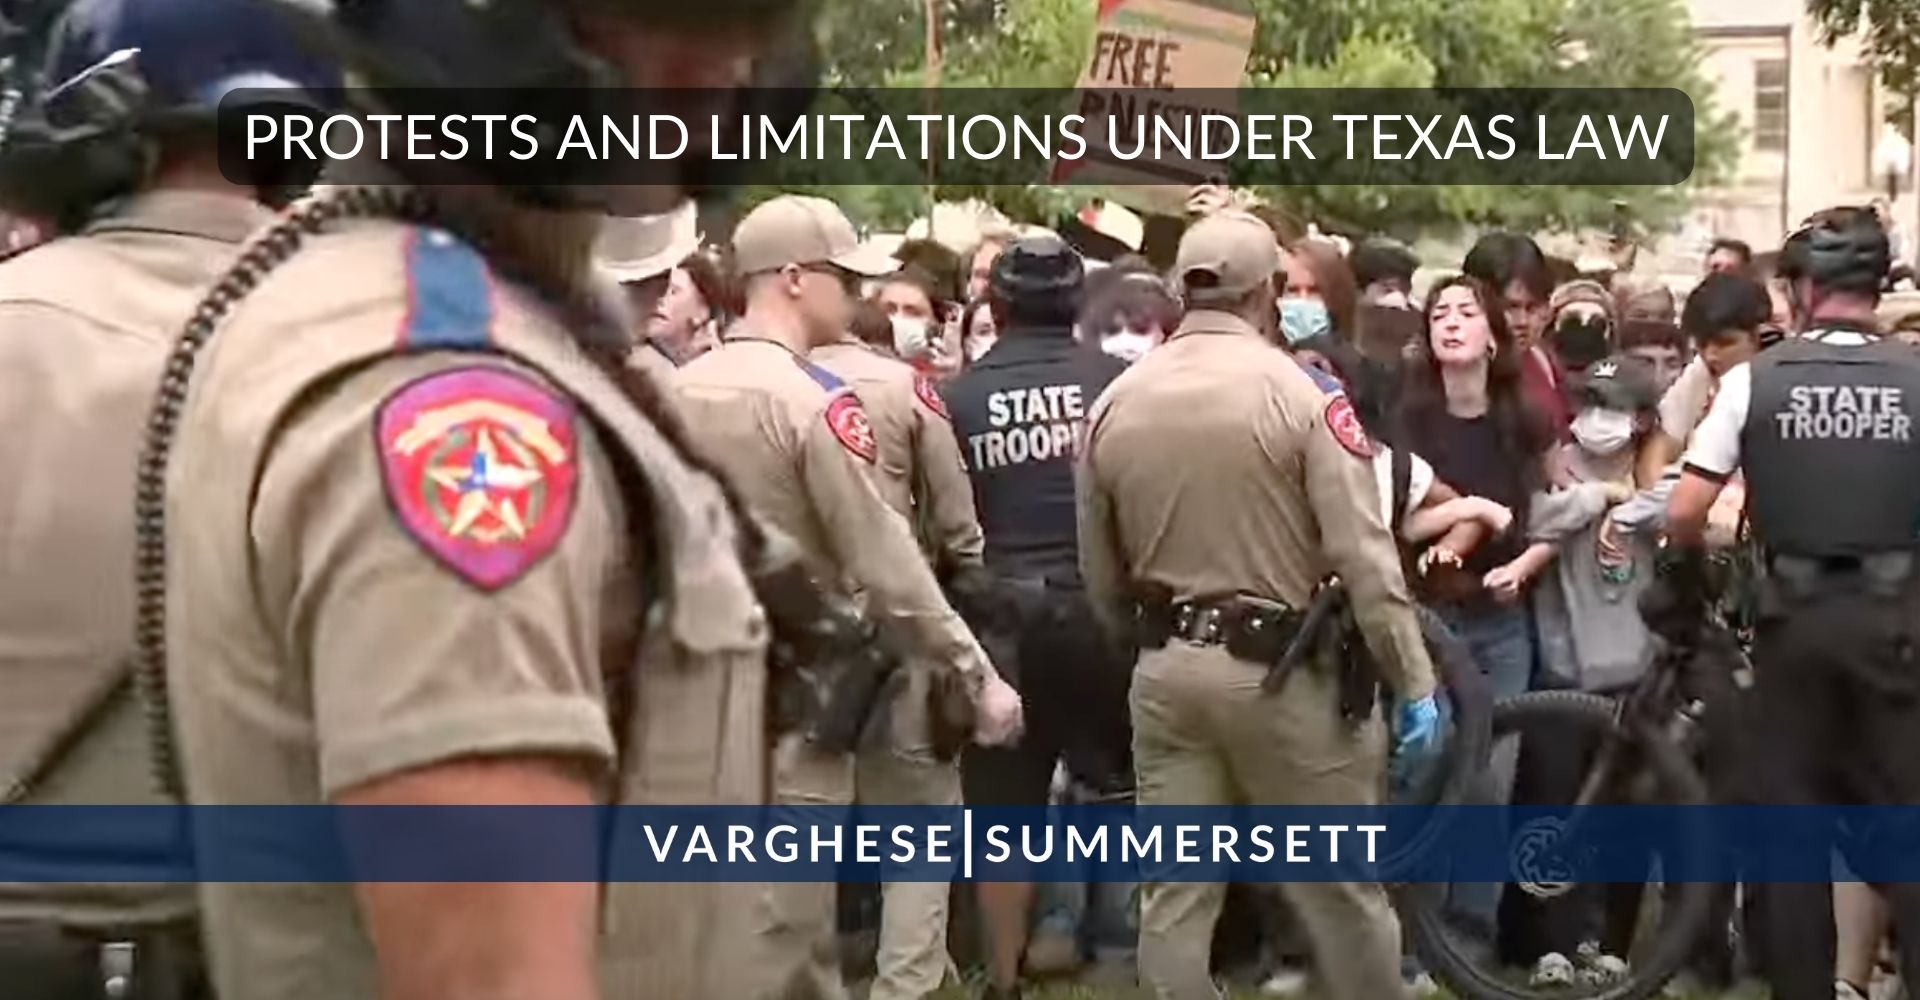 Detenciones en la Universidad de Texas: Protestas en Texas y limitaciones a la libertad de expresión